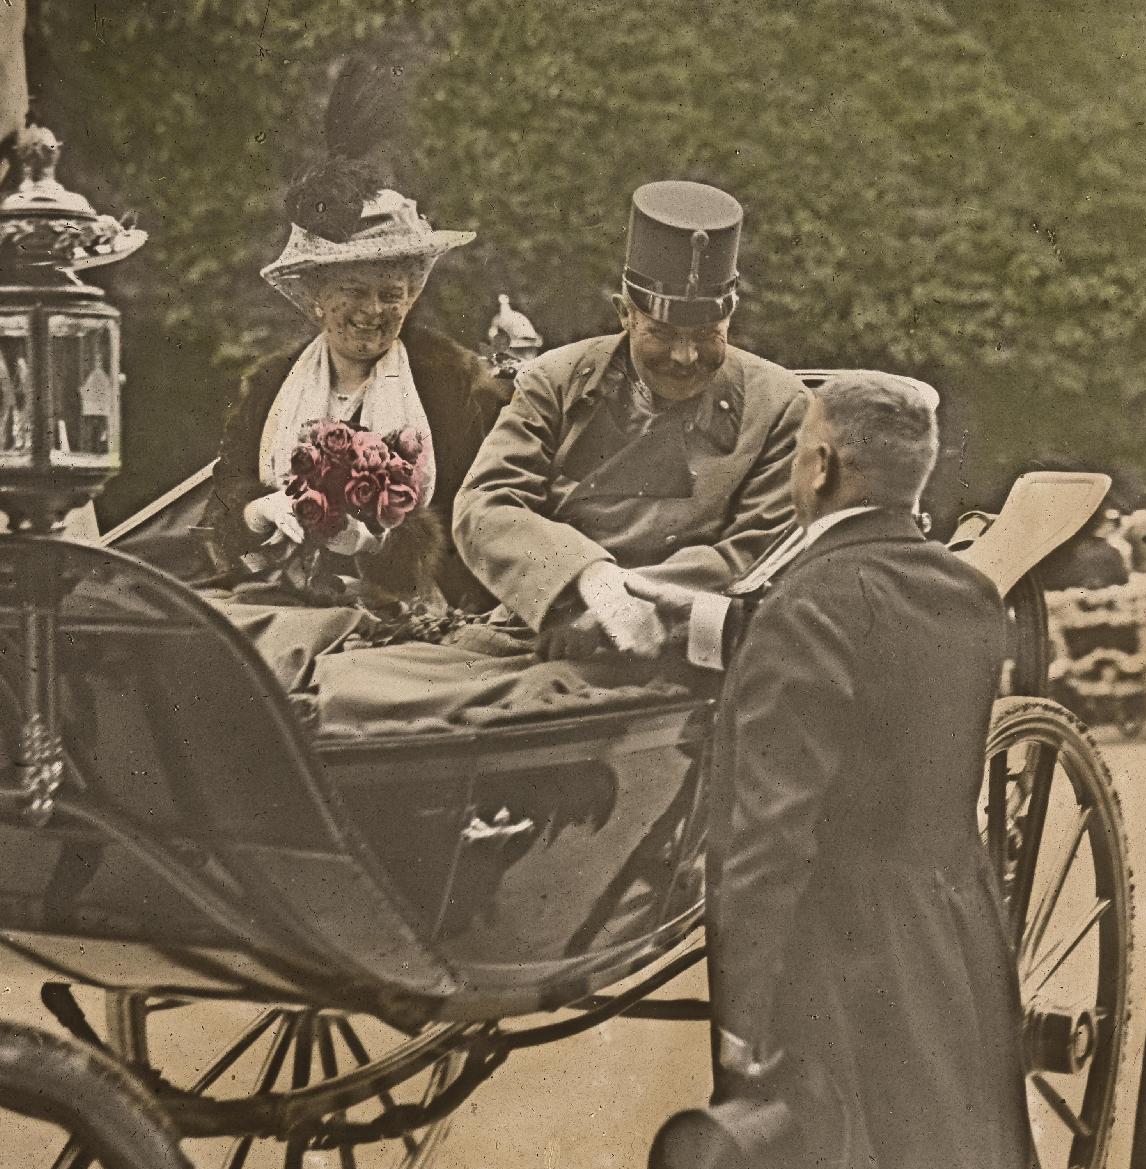 Exponat: Foto: Erzherzog Franz Ferdinand und Gemahlin Sophie Chotek von Chotkowa in einer Kutsche in Wien, 1914